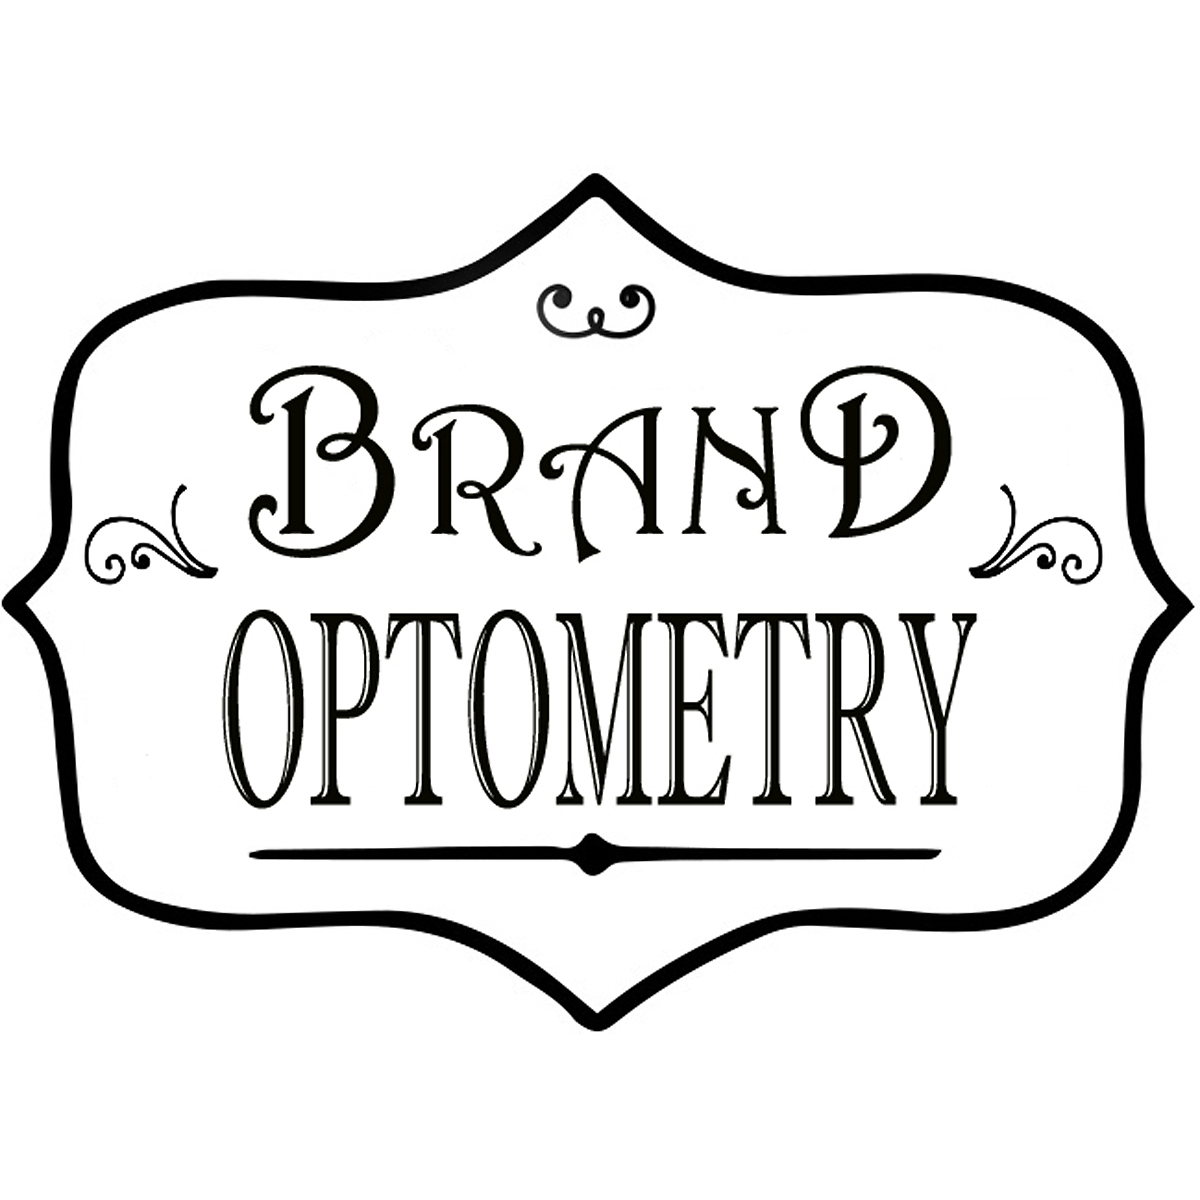 Brand Optometry